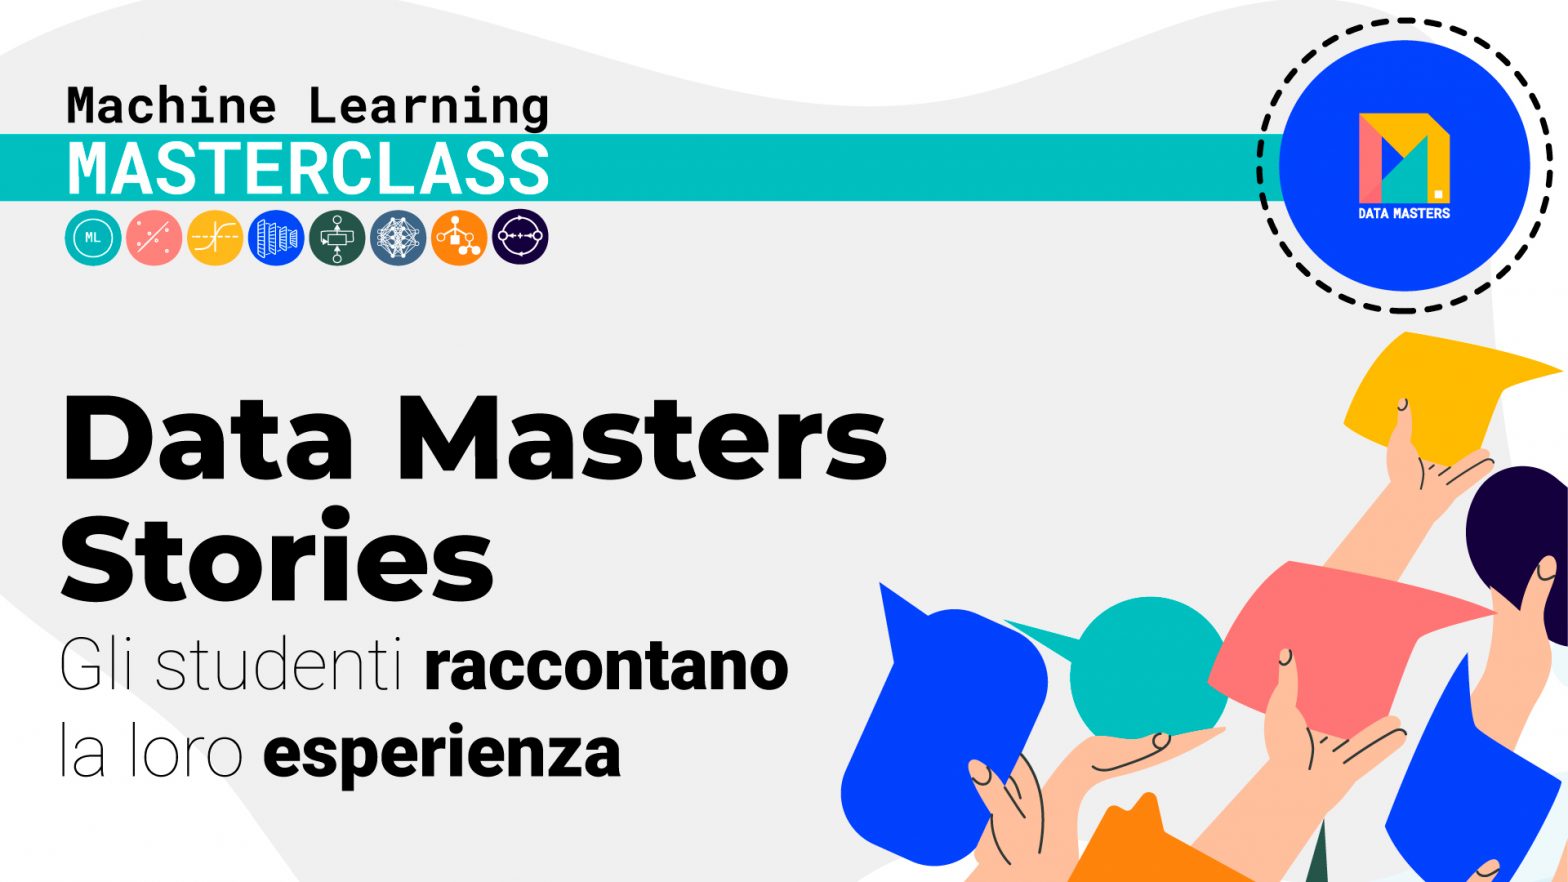 Copertina dell'articolo Data Masters Stories. L'immagine presenta icone simboliche relative all'apprendimento automatico e mani di studenti con carte colorate, rappresentando le loro esperienze.